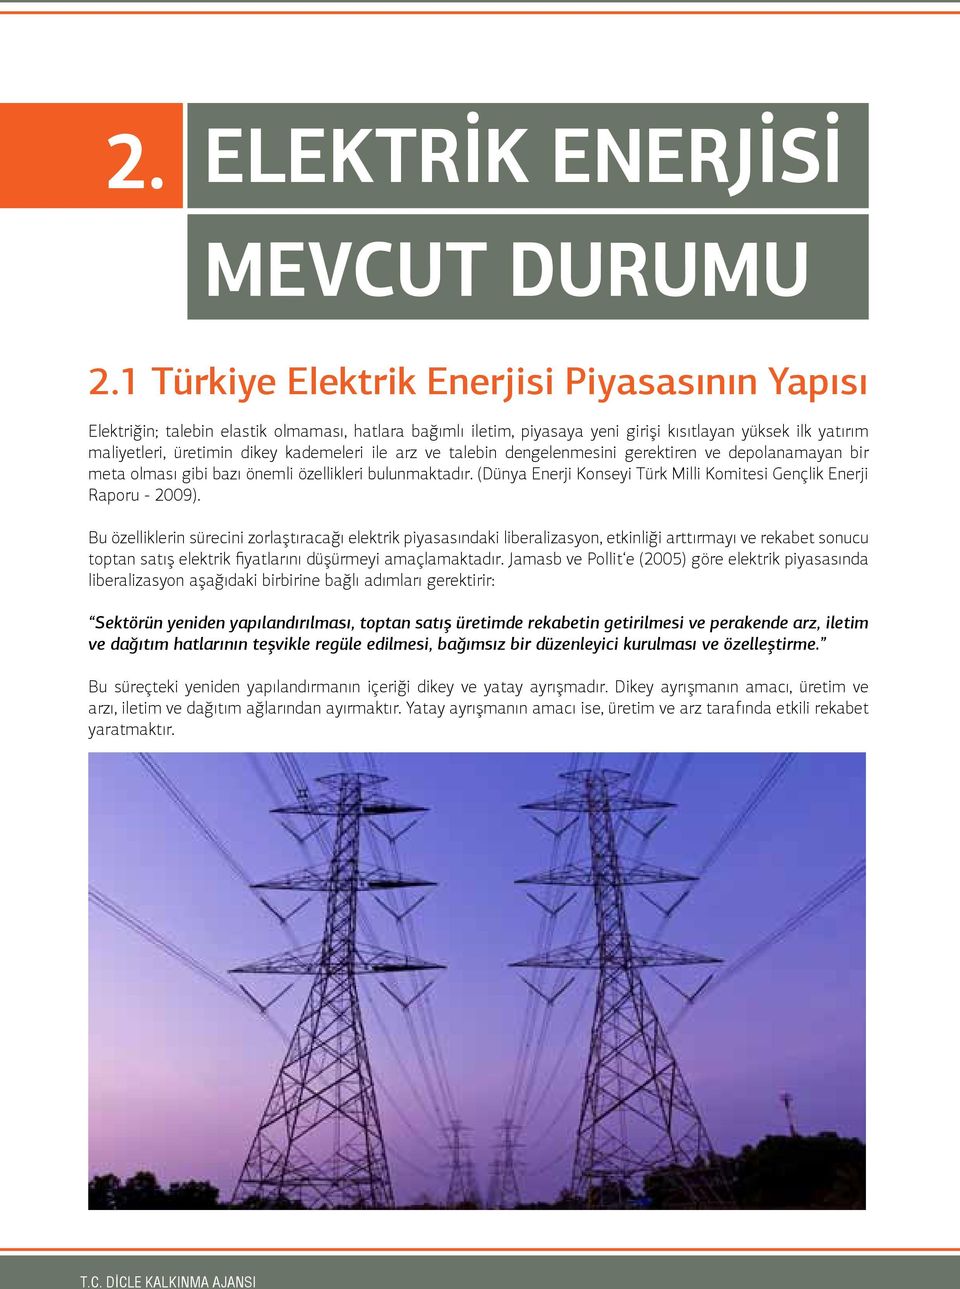 ile arz ve talebin dengelenmesini gerektiren ve depolanamayan bir meta olması gibi bazı önemli özellikleri bulunmaktadır. (Dünya Enerji Konseyi Türk Milli Komitesi Gençlik Enerji Raporu - 2009).